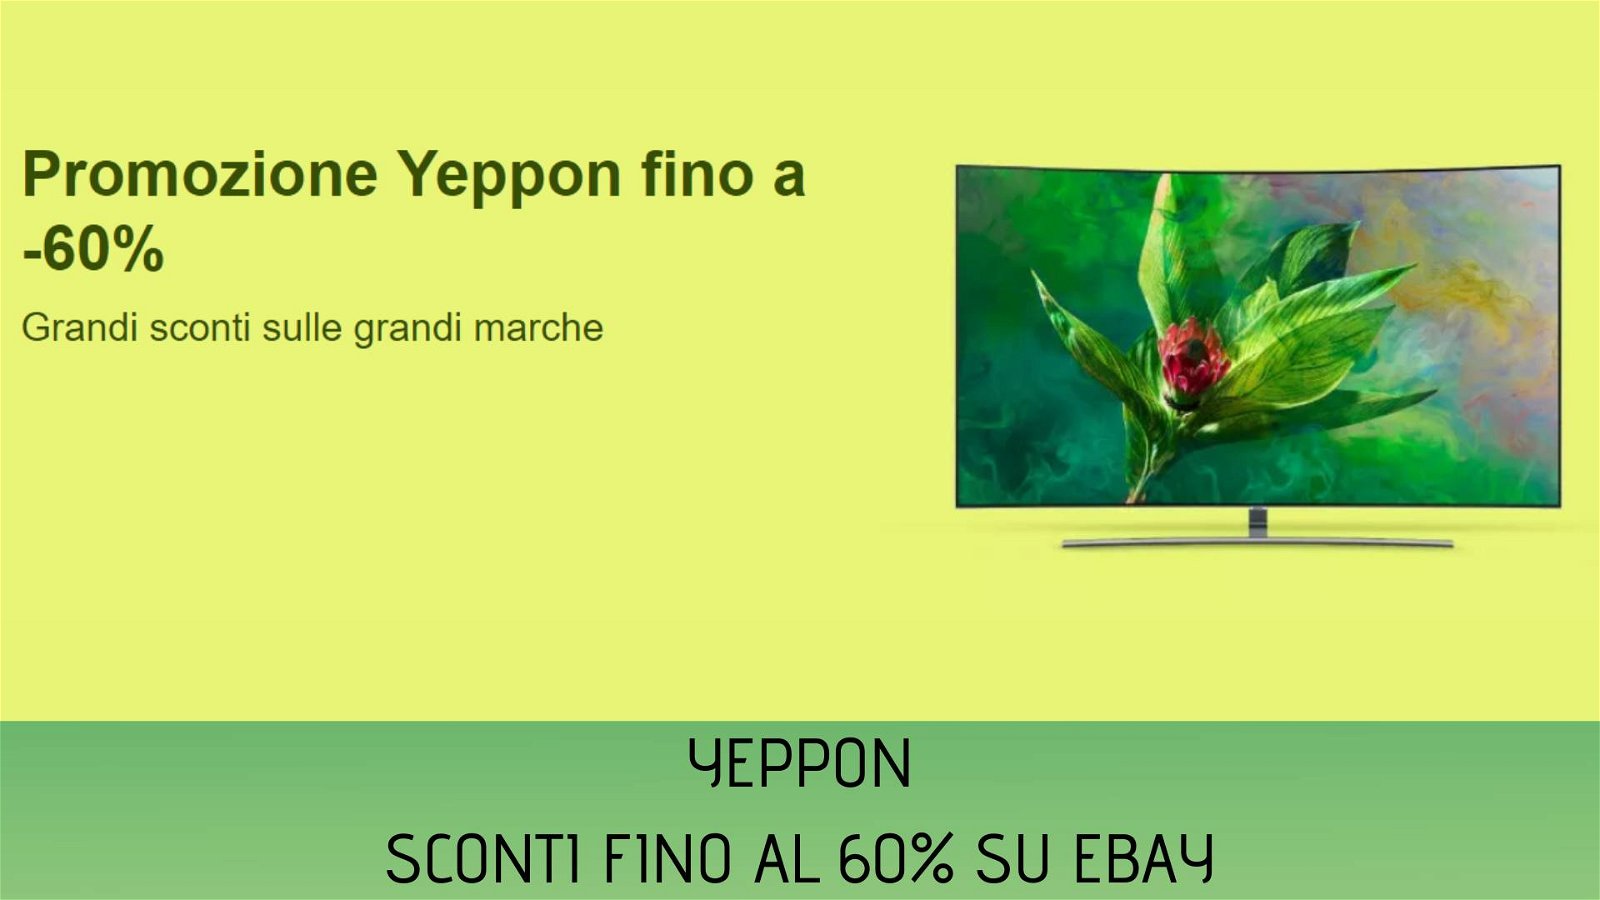 Immagine di Fino a -60% sulle grandi marche su eBay grazie a Yeppon!